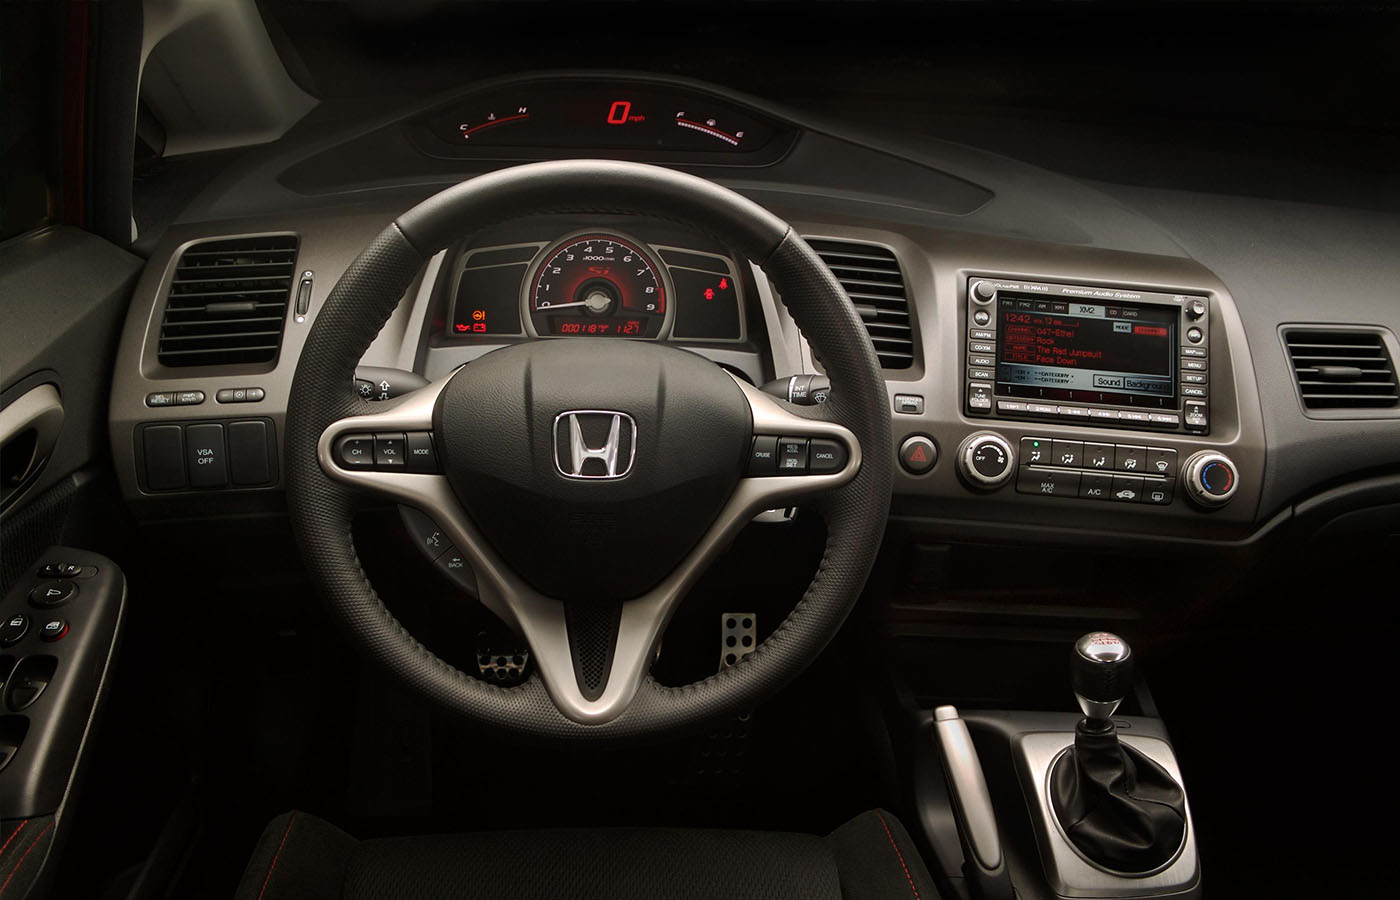 Unlock your 04 Honda Element radio code now!